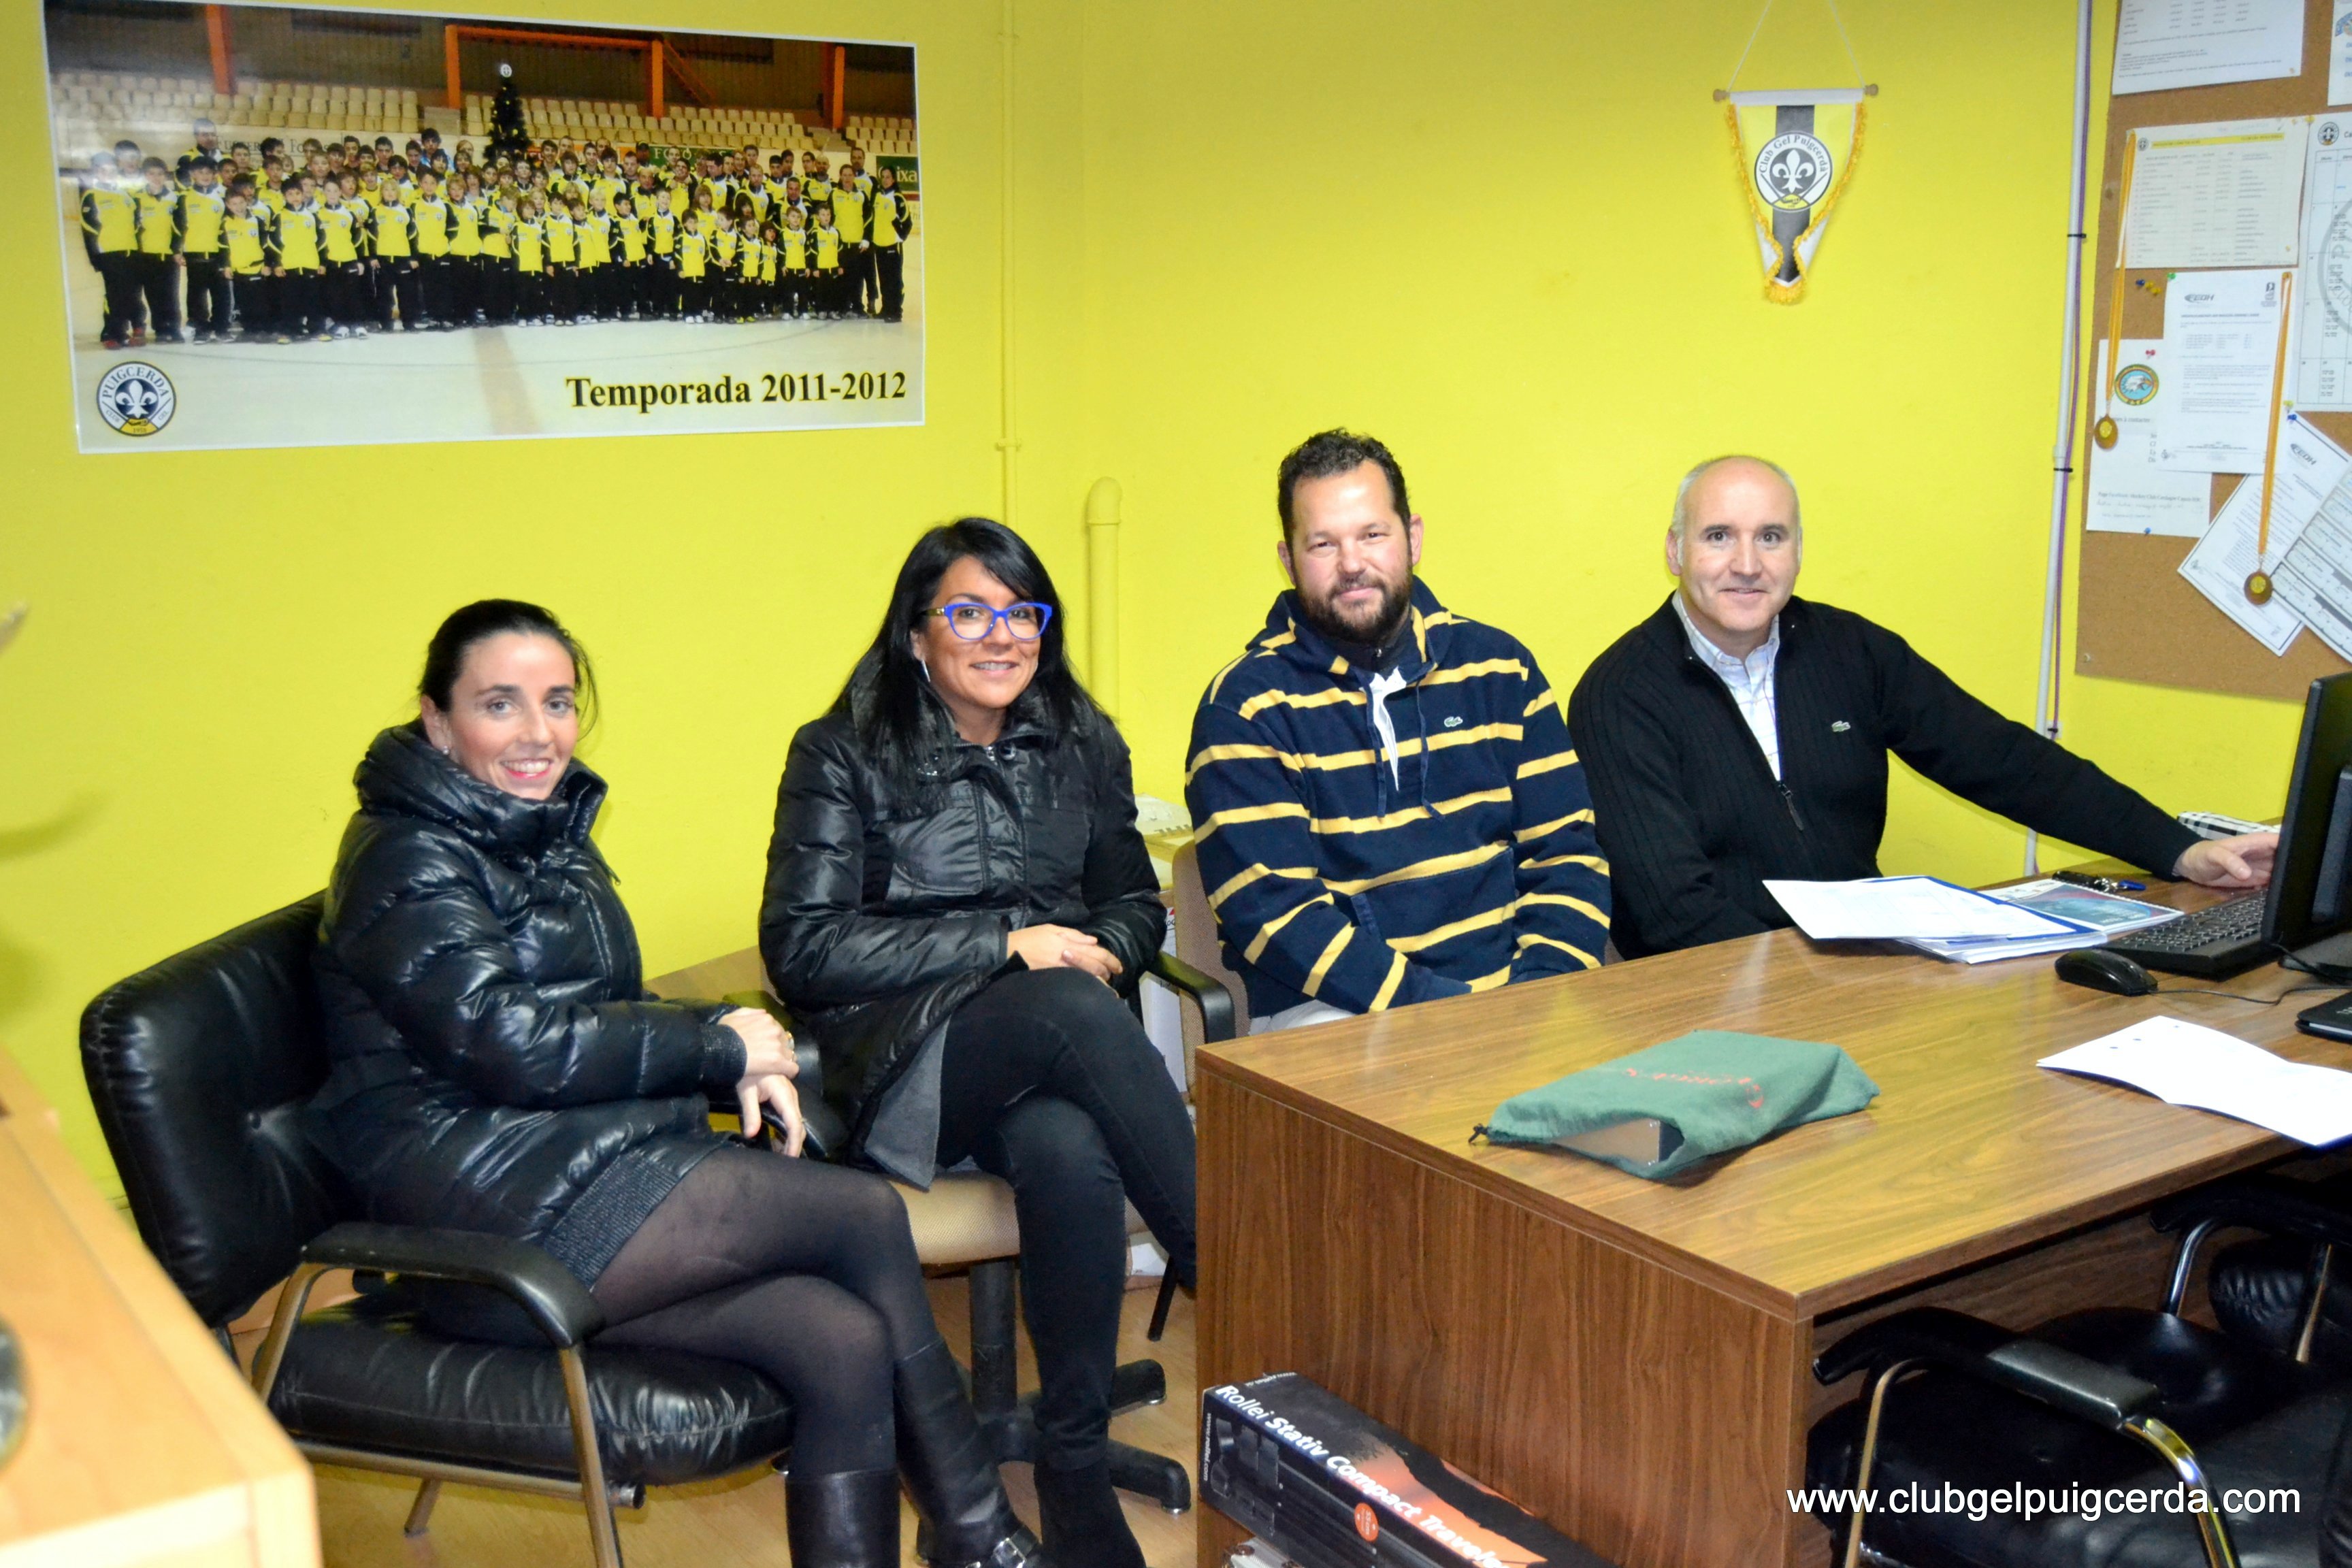 Els Jutges de Taula amb qui hem xerrat una bona estona. De esquerra a dreta: Bea Pereiro, Míriam Forés, Carles Gota i Quim Vilella.